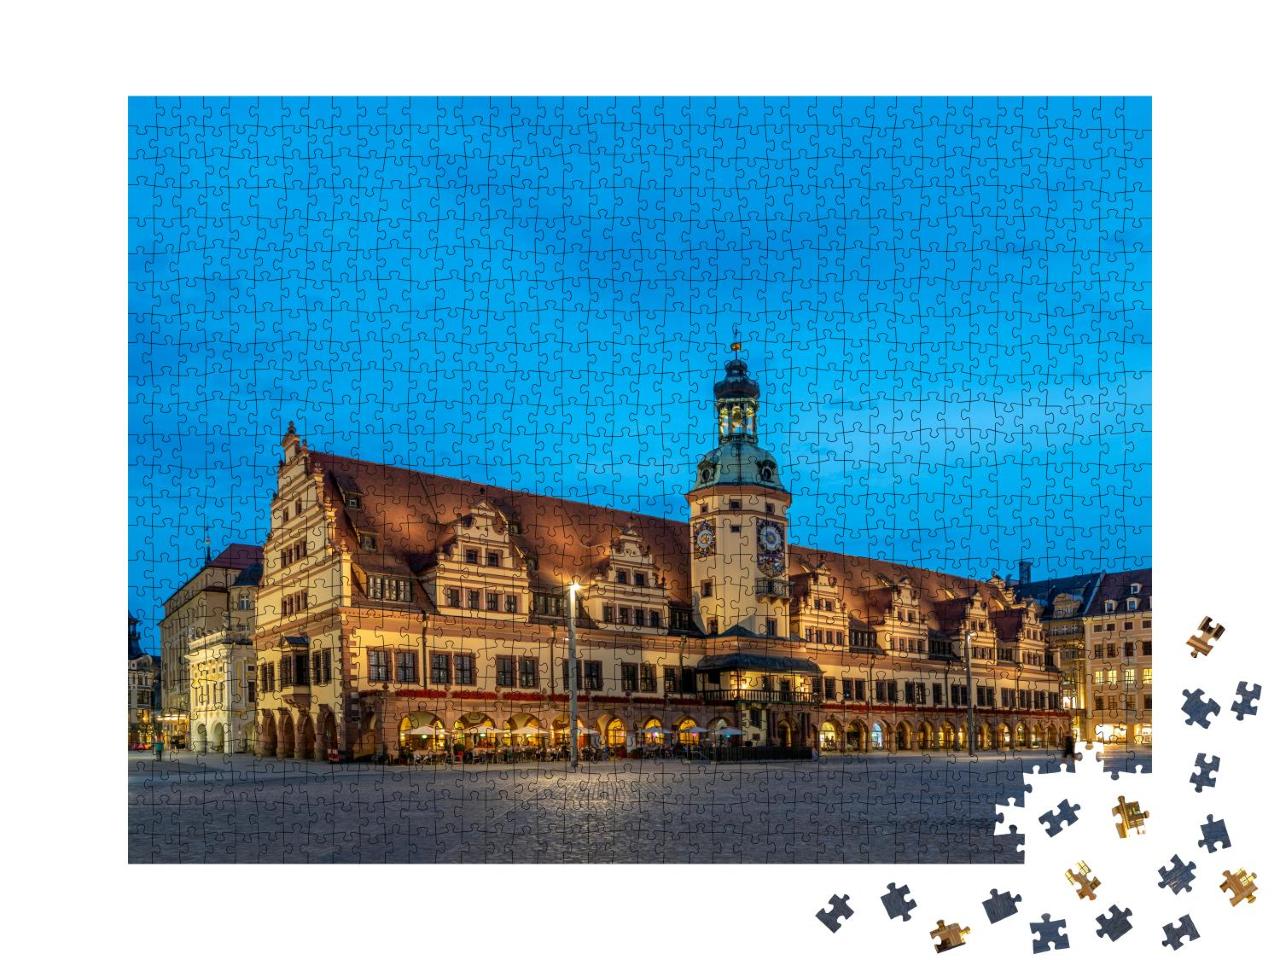 Puzzle 1000 Teile „Altes Rathaus zur blauen Stunde, Leipzig, Deutschland“